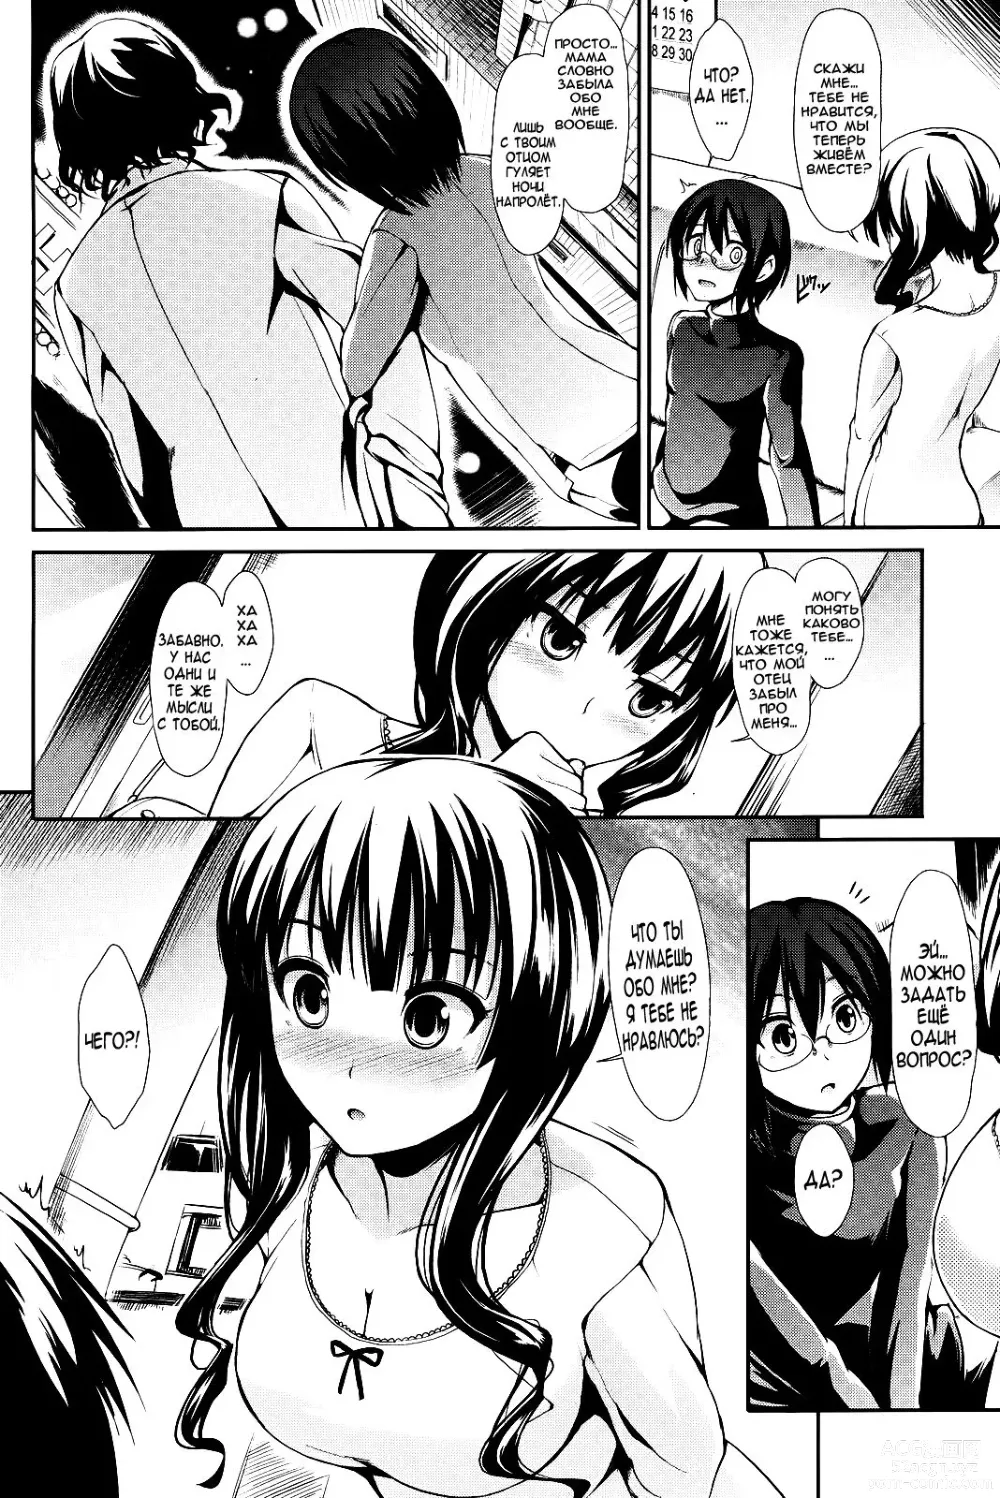 Page 4 of manga Две части одного целого